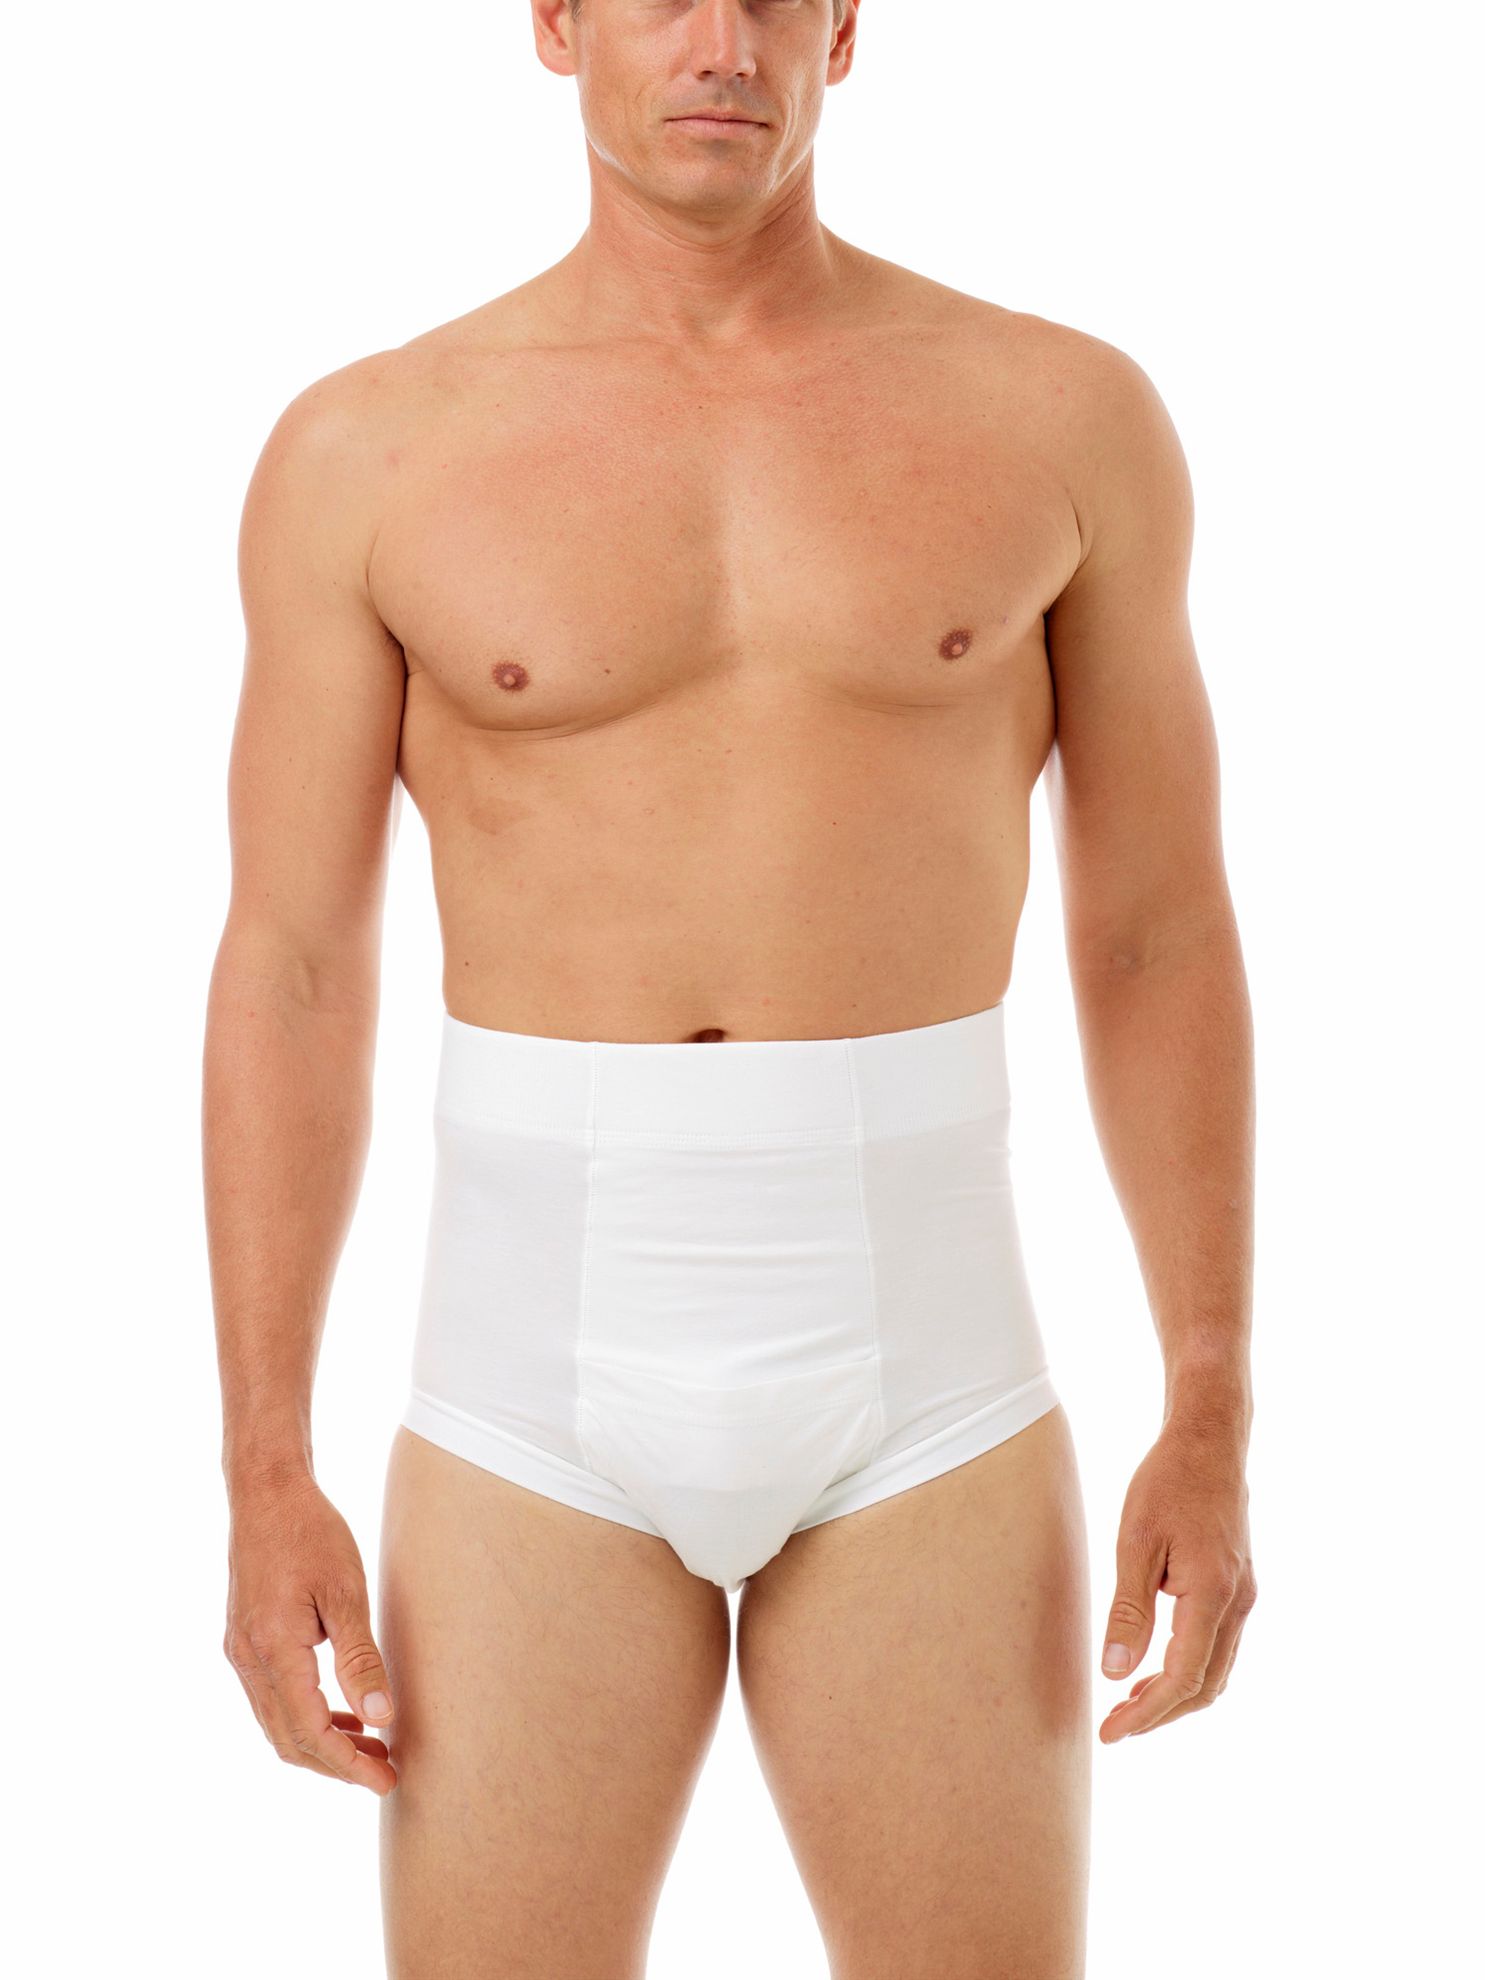 Flat Stomach Men's High waist slimming underwear